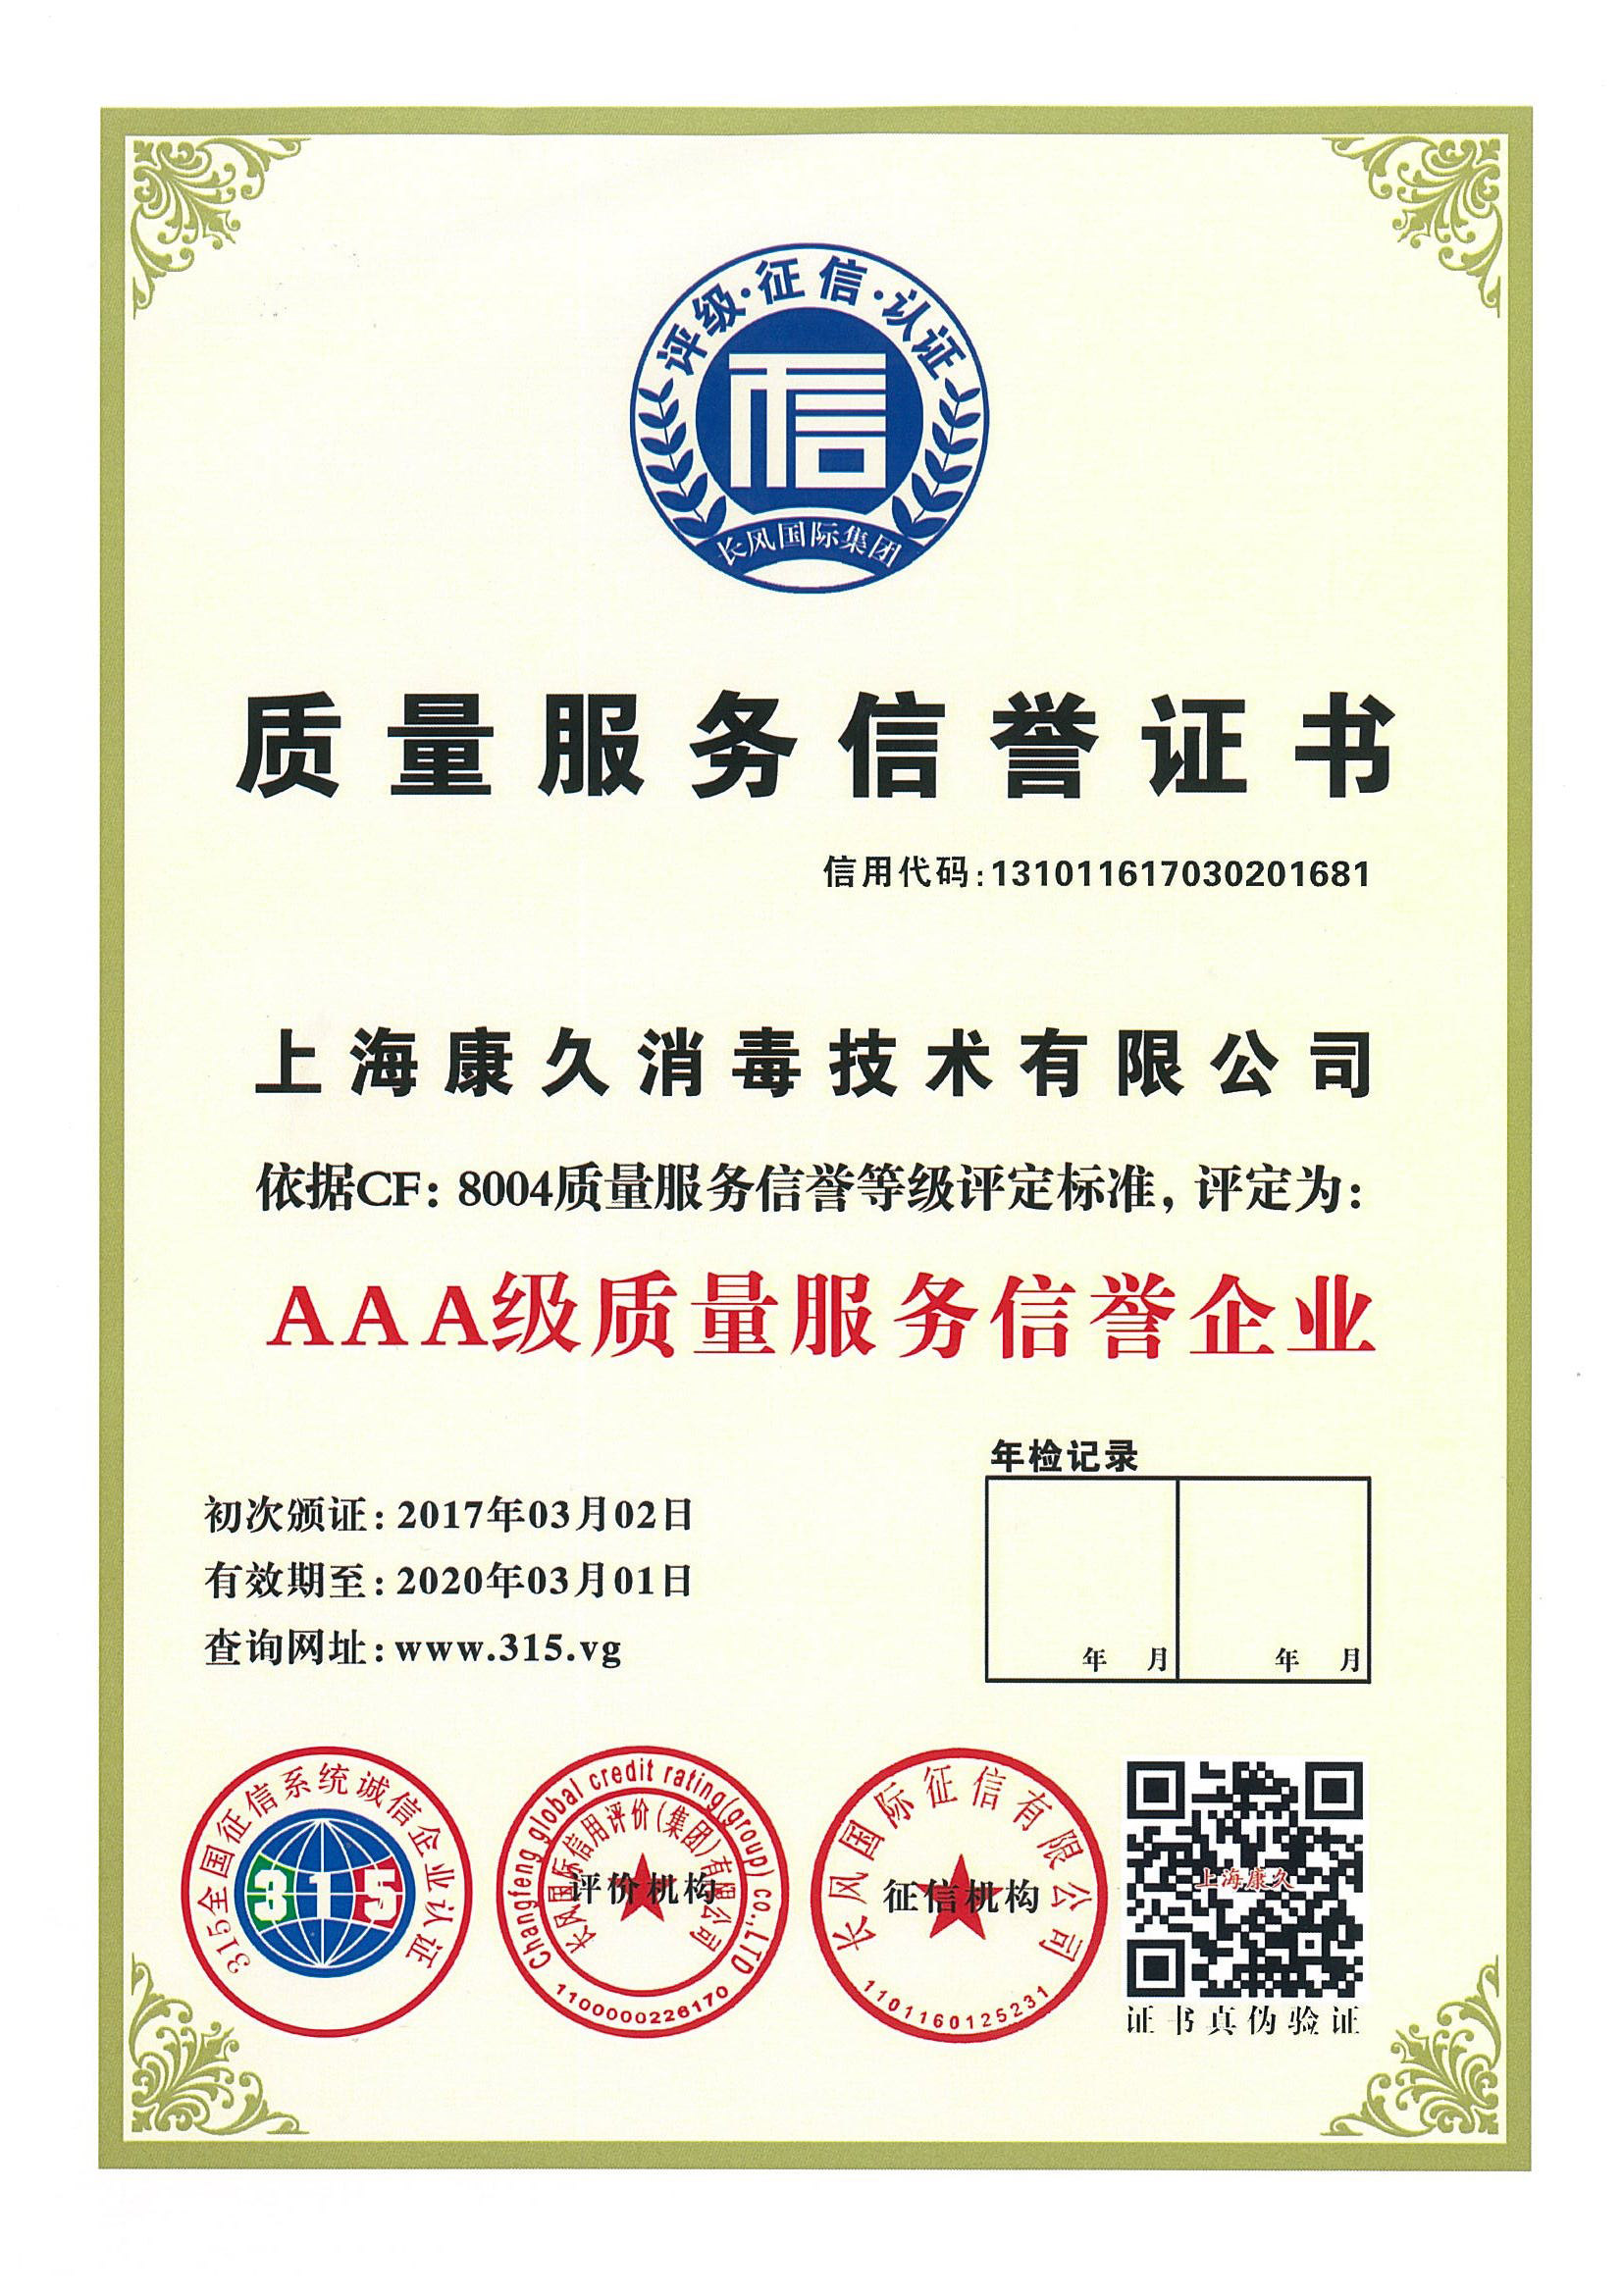 “杨浦质量服务信誉证书